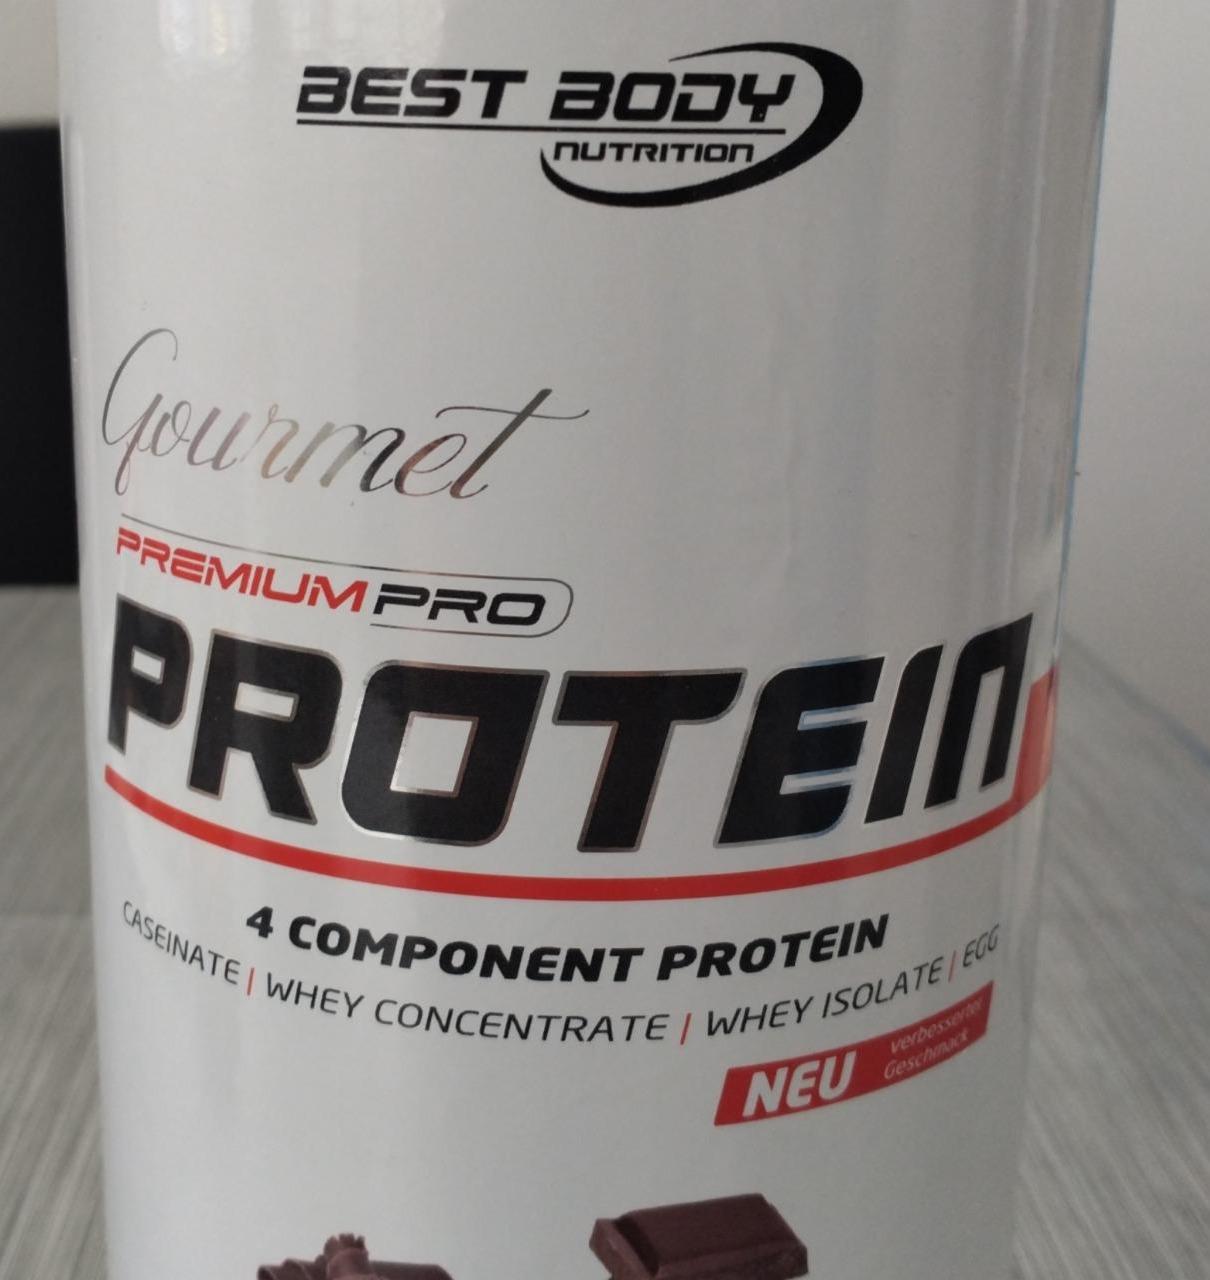 Fotografie - Gourmet premium pro protein milk chocolate Best Body Nutrition